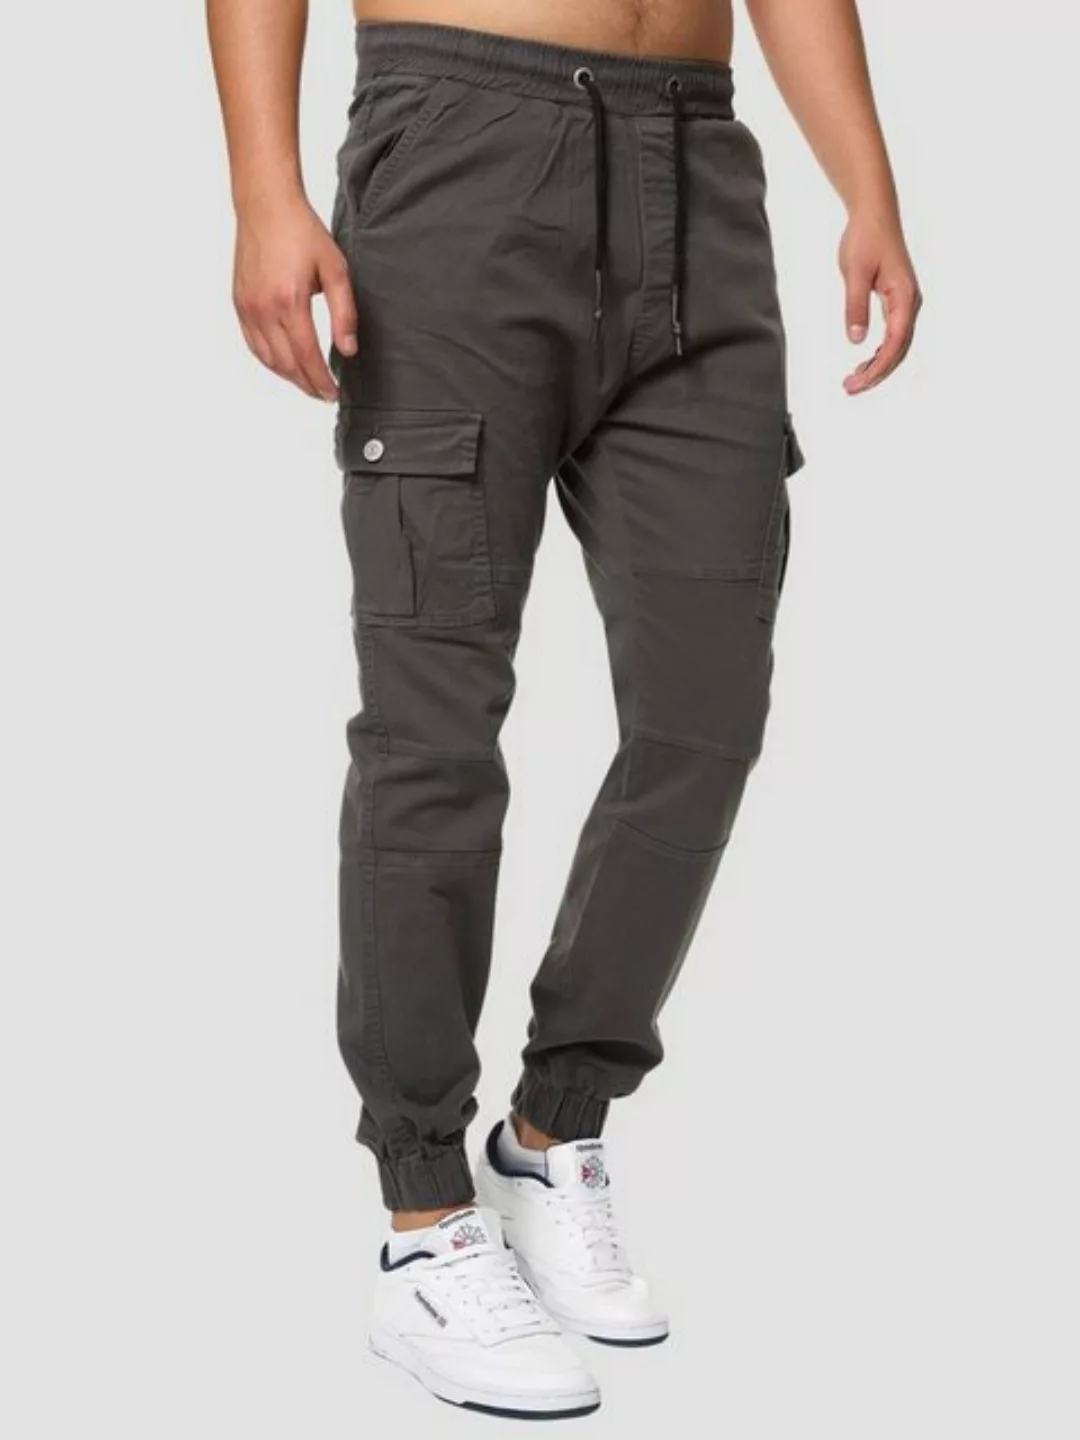 John Kayna Cargojeans Herren Cargo Hose Slim Fit Utility Jeans Männer Chino günstig online kaufen